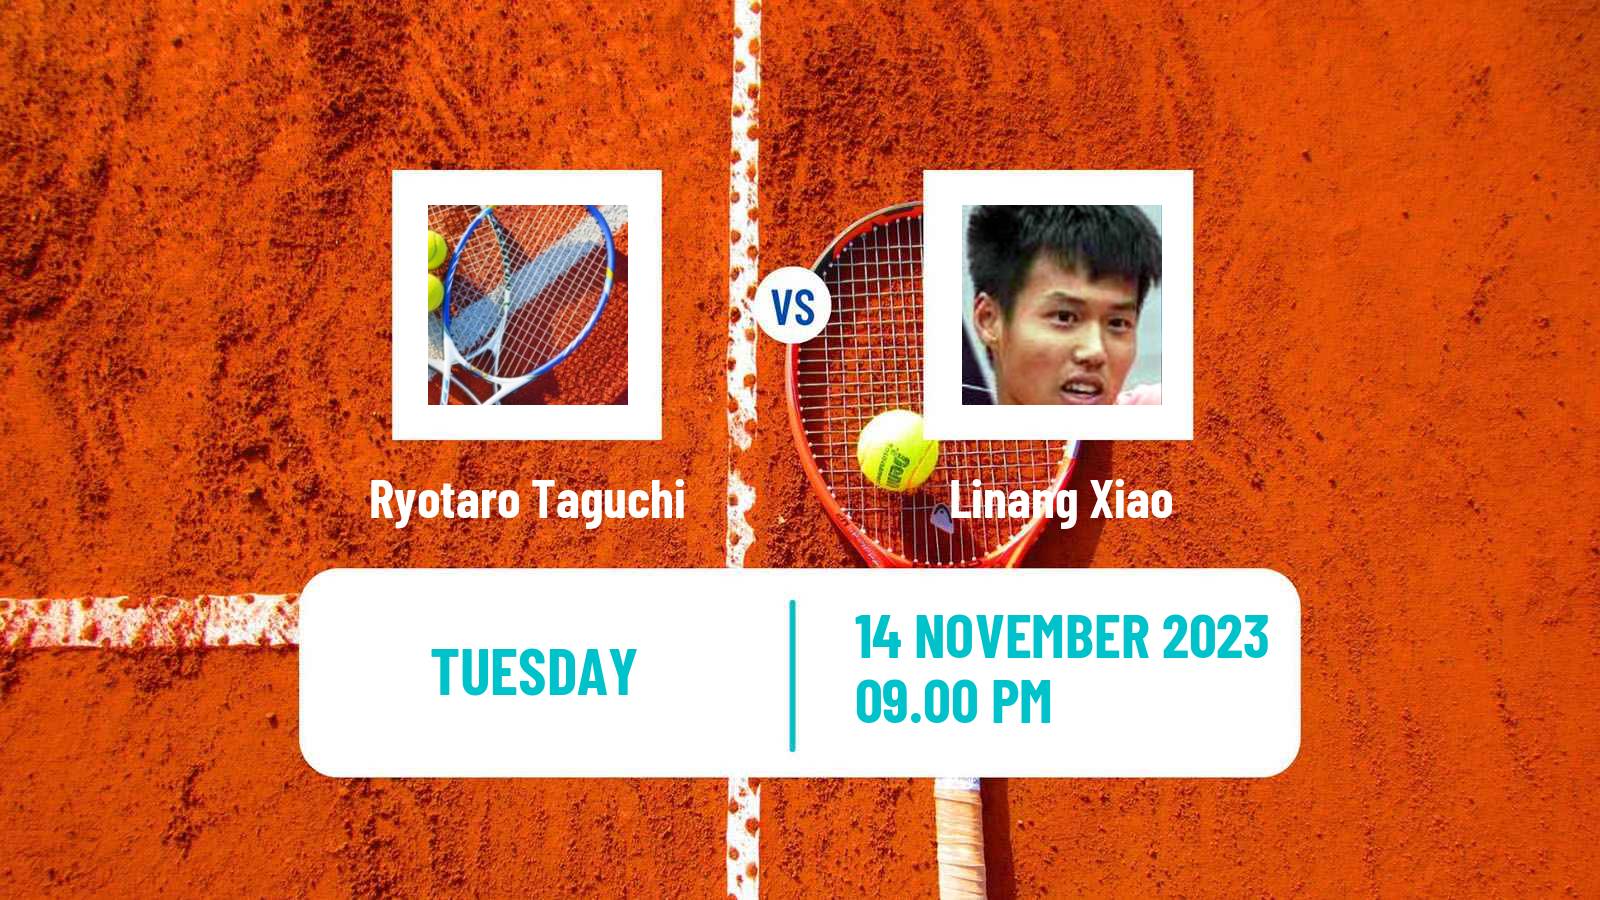 Tennis ITF M15 Kuching Men Ryotaro Taguchi - Linang Xiao